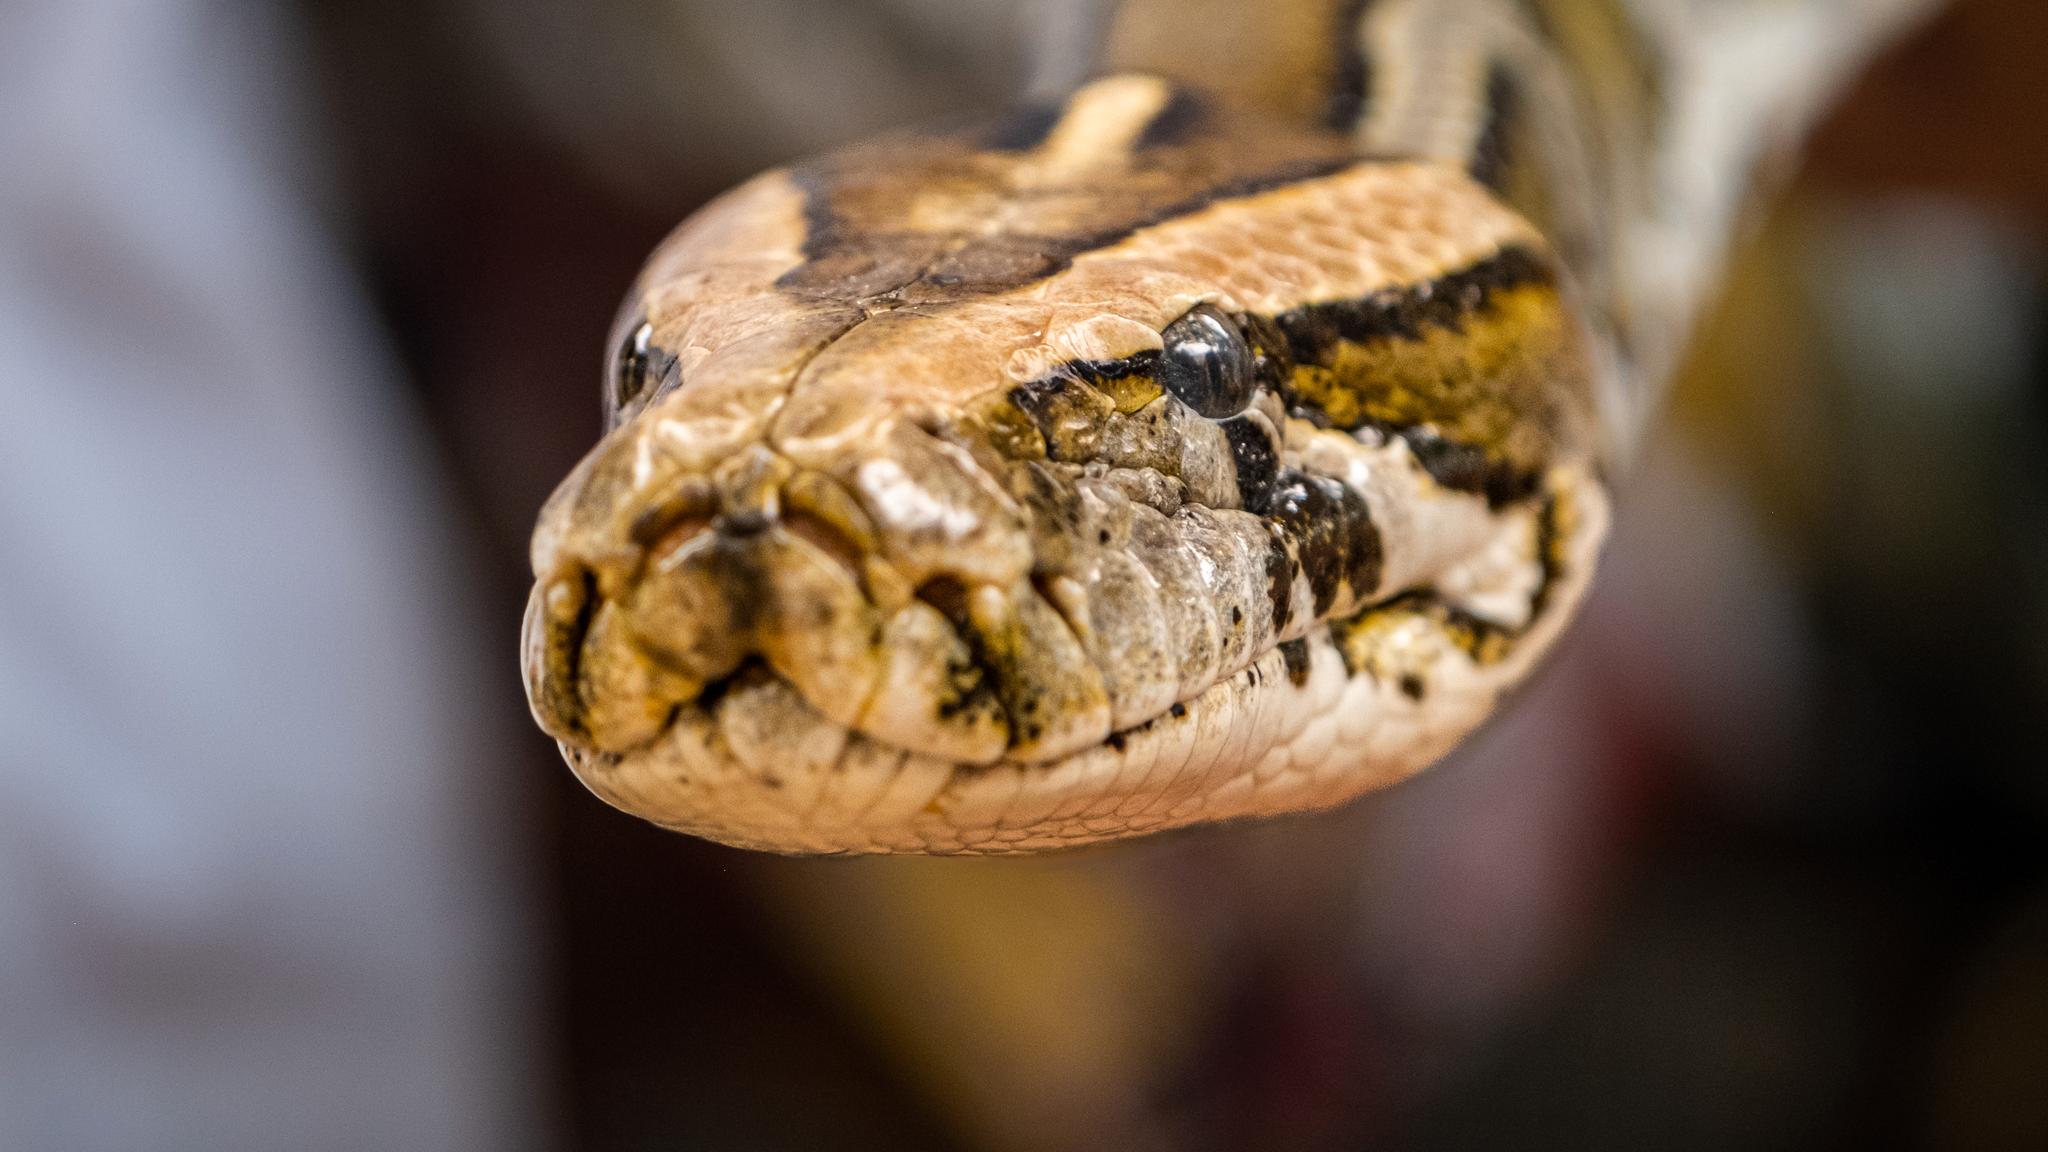 Thailand kryr av giftige slanger. Så hvorfor blir så få drept?